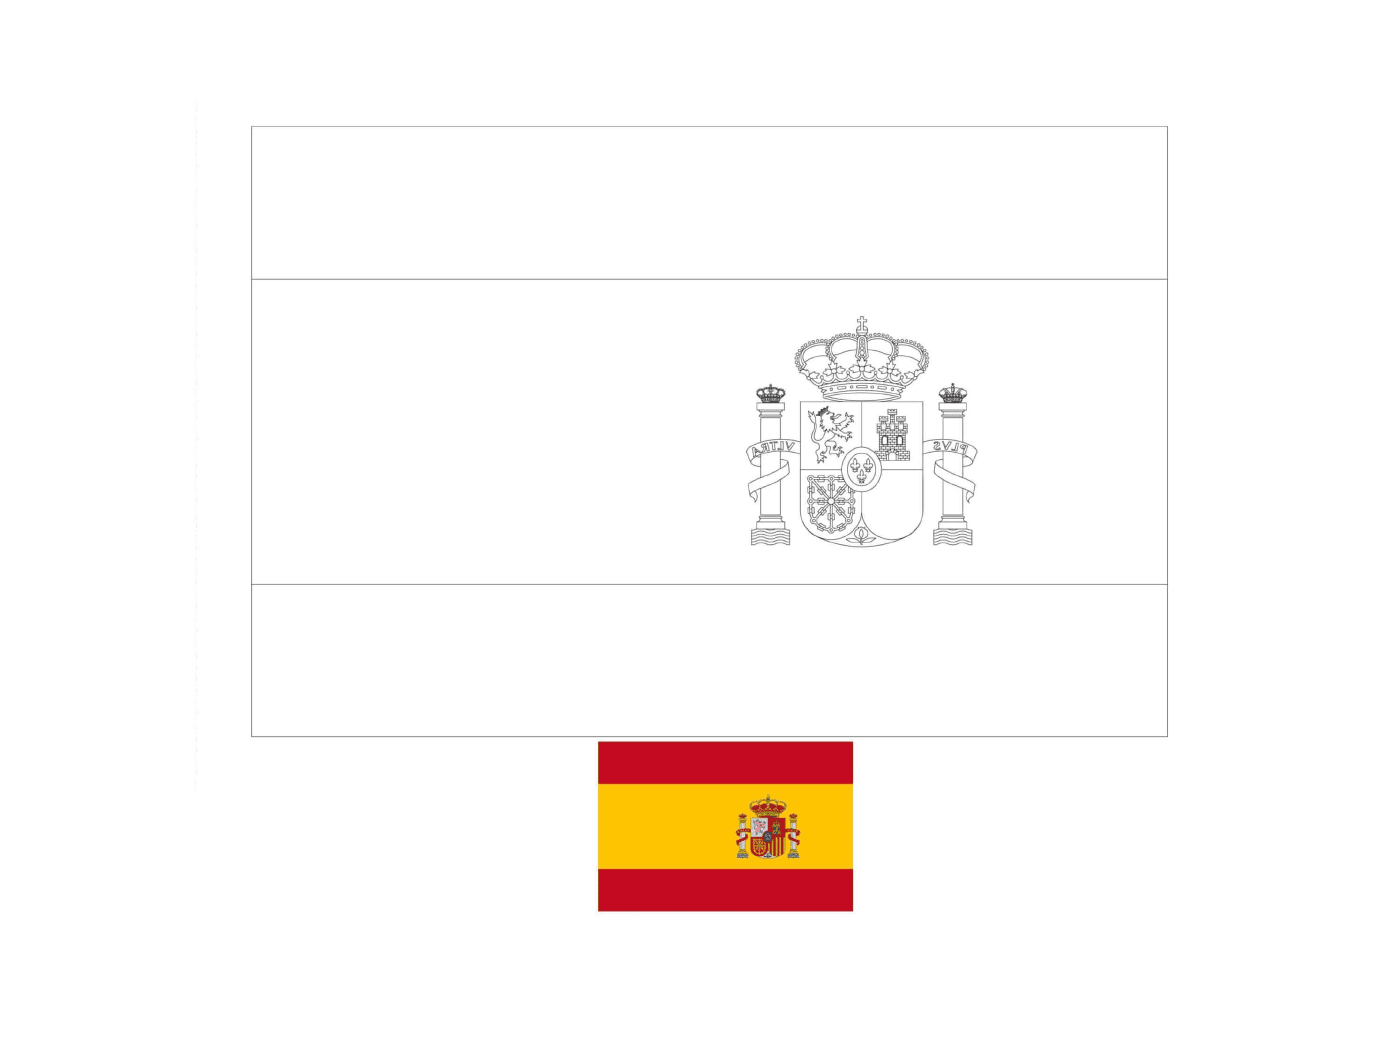  Bandiera della Spagna disegnata con esempi 